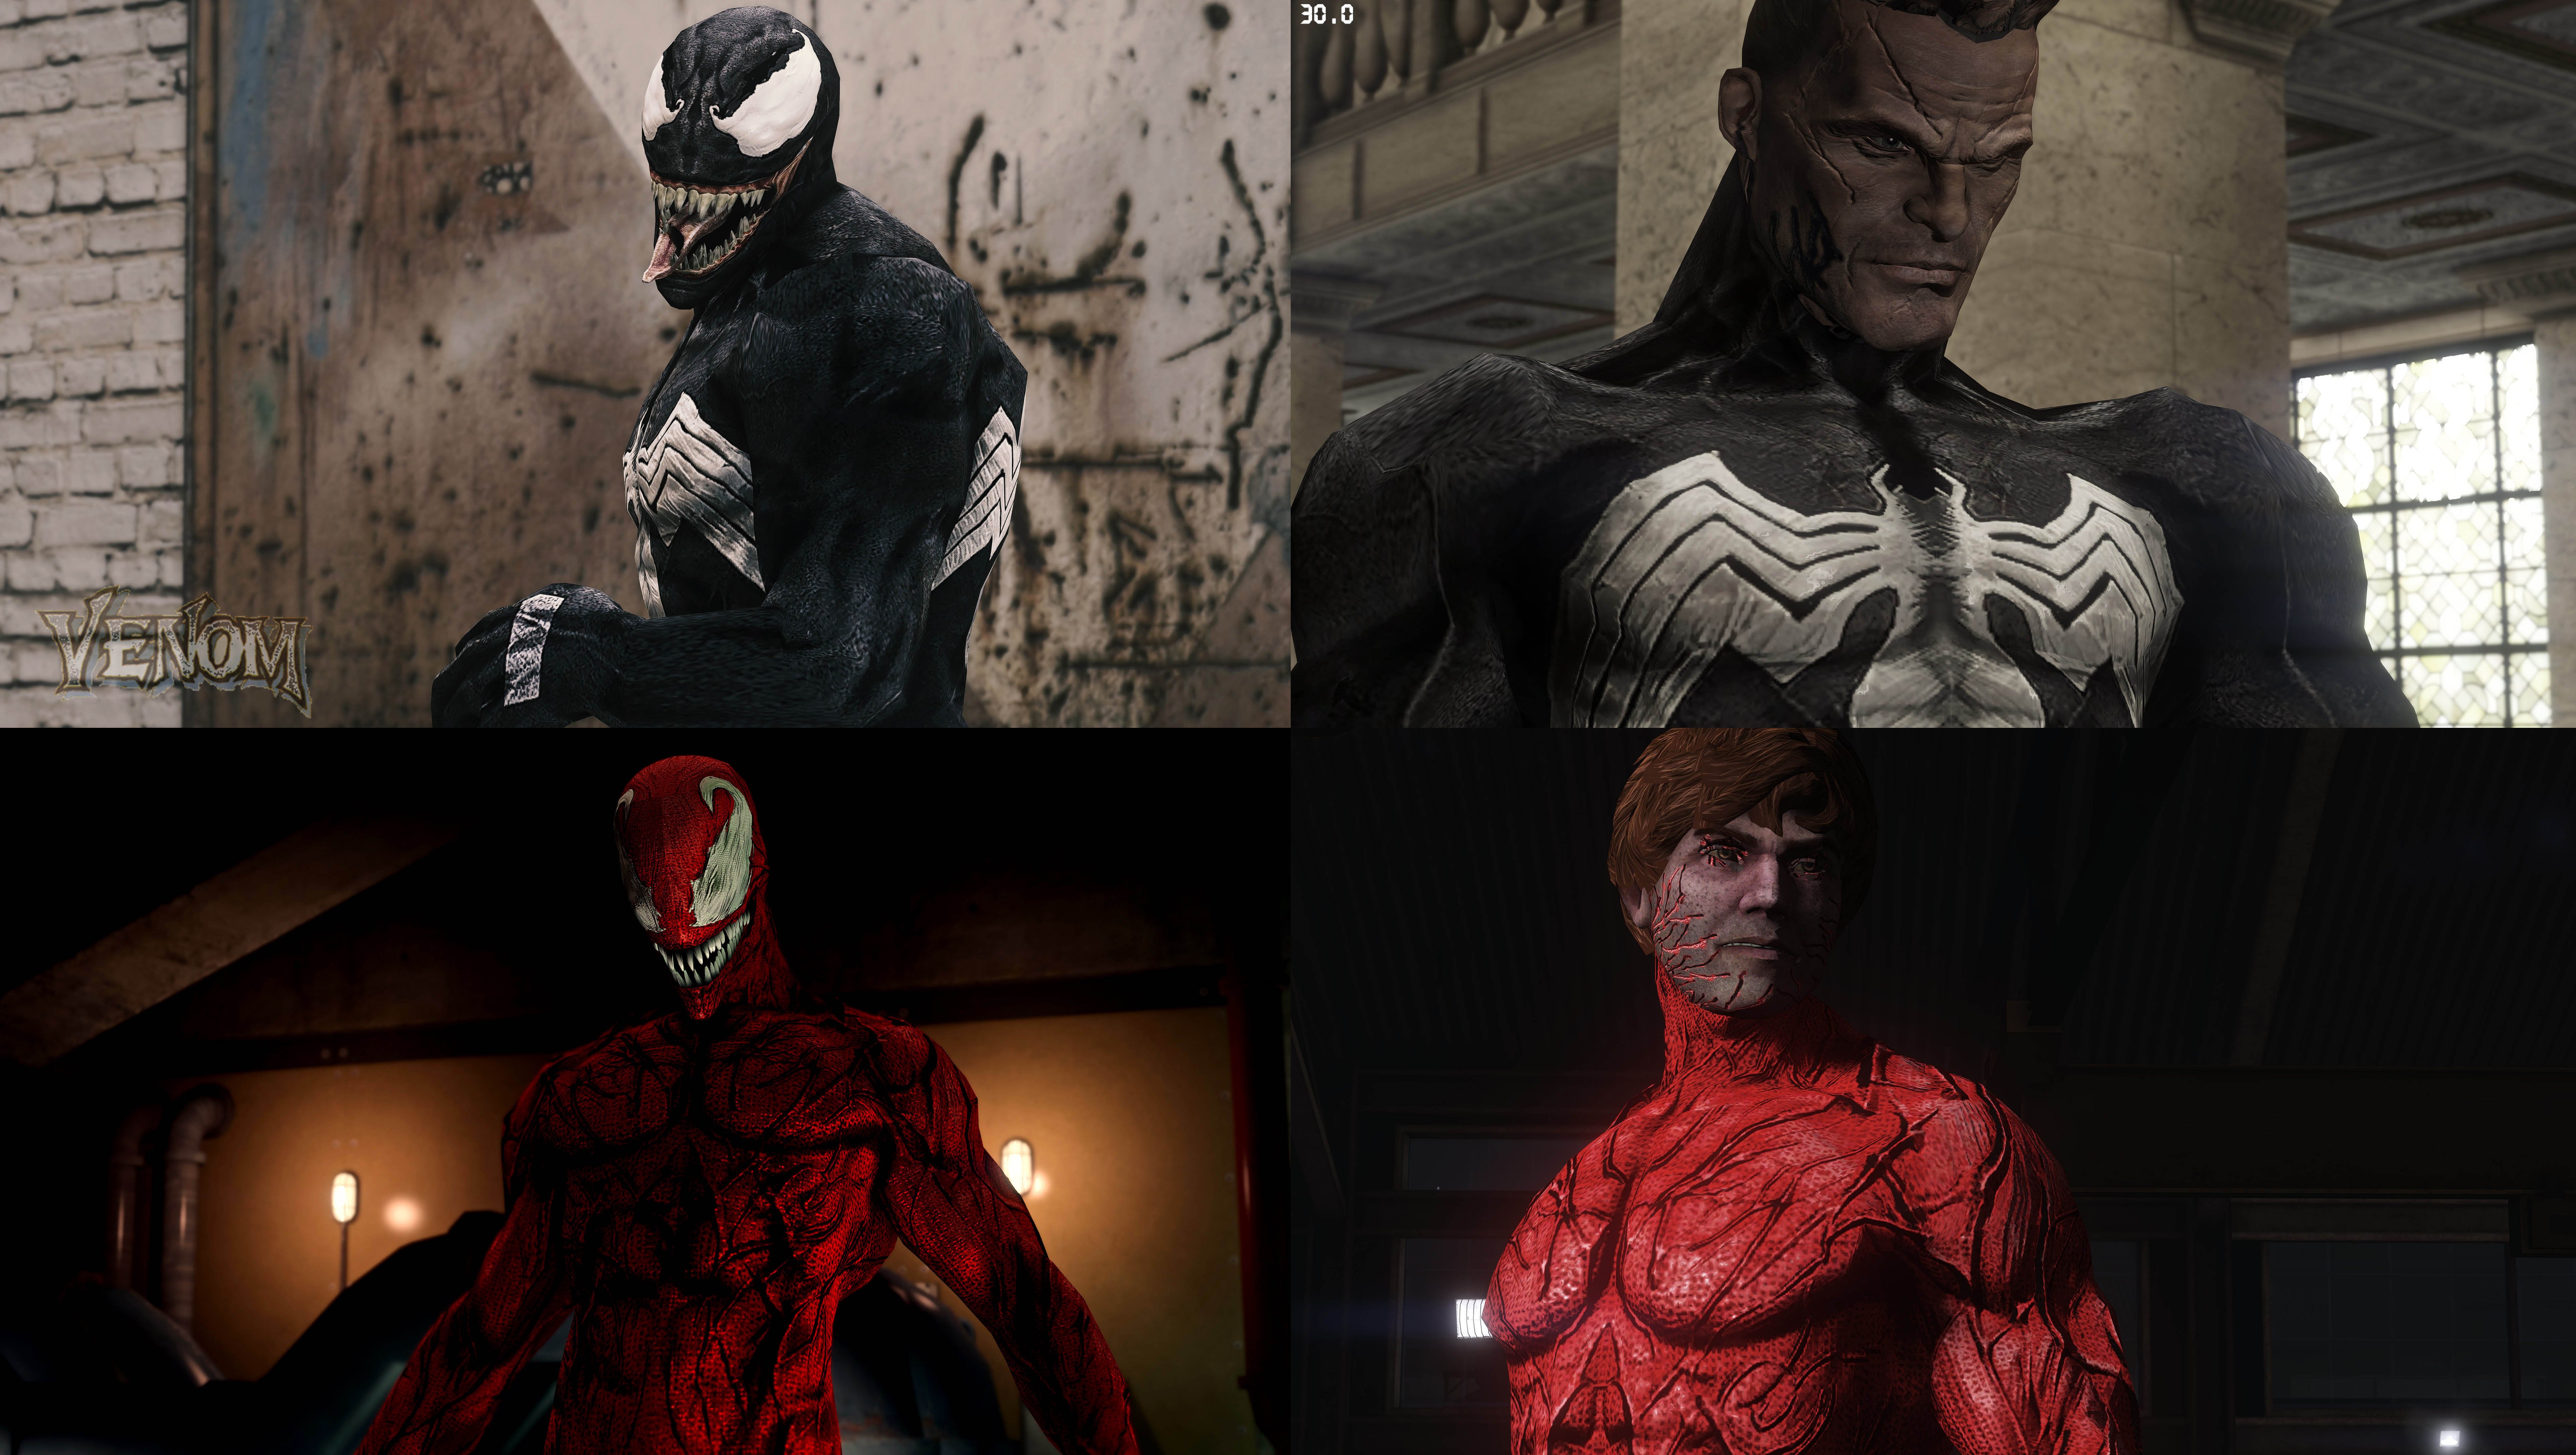 Spider-Man india [Spider-Man: Web of Shadows] [Mods]